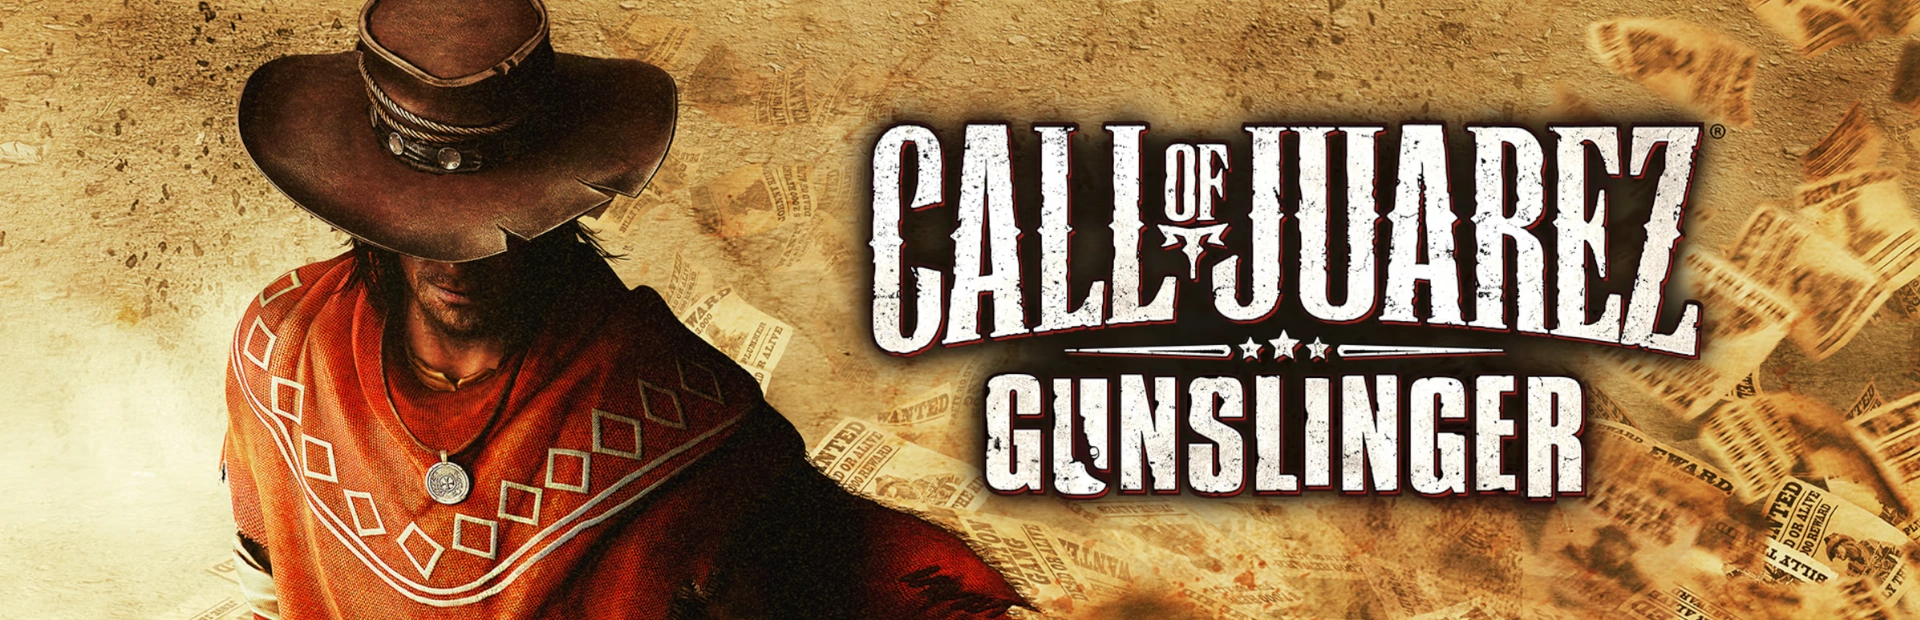 دانلود بازی Call of Juarez Gunslinger برای کامپیوتر | گیمباتو